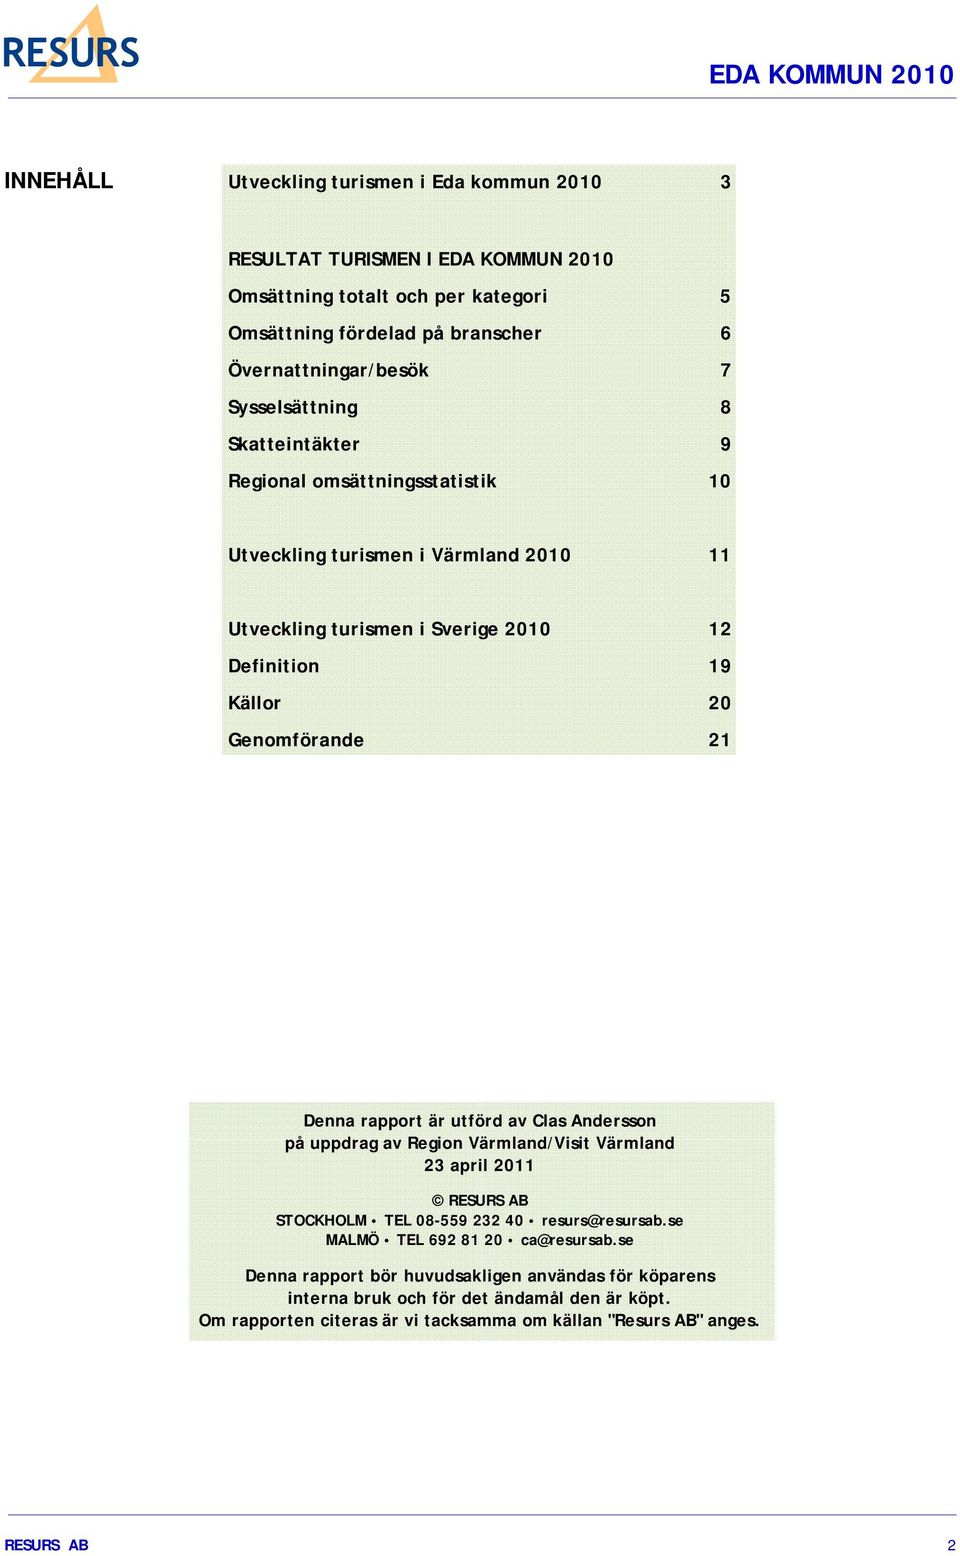 Denna rapport är utförd av Clas Andersson på uppdrag av Region Värmland/Visit Värmland 23 april 2011 RESURS AB STOCKHOLM TEL 08-559 232 40 resurs@resursab.